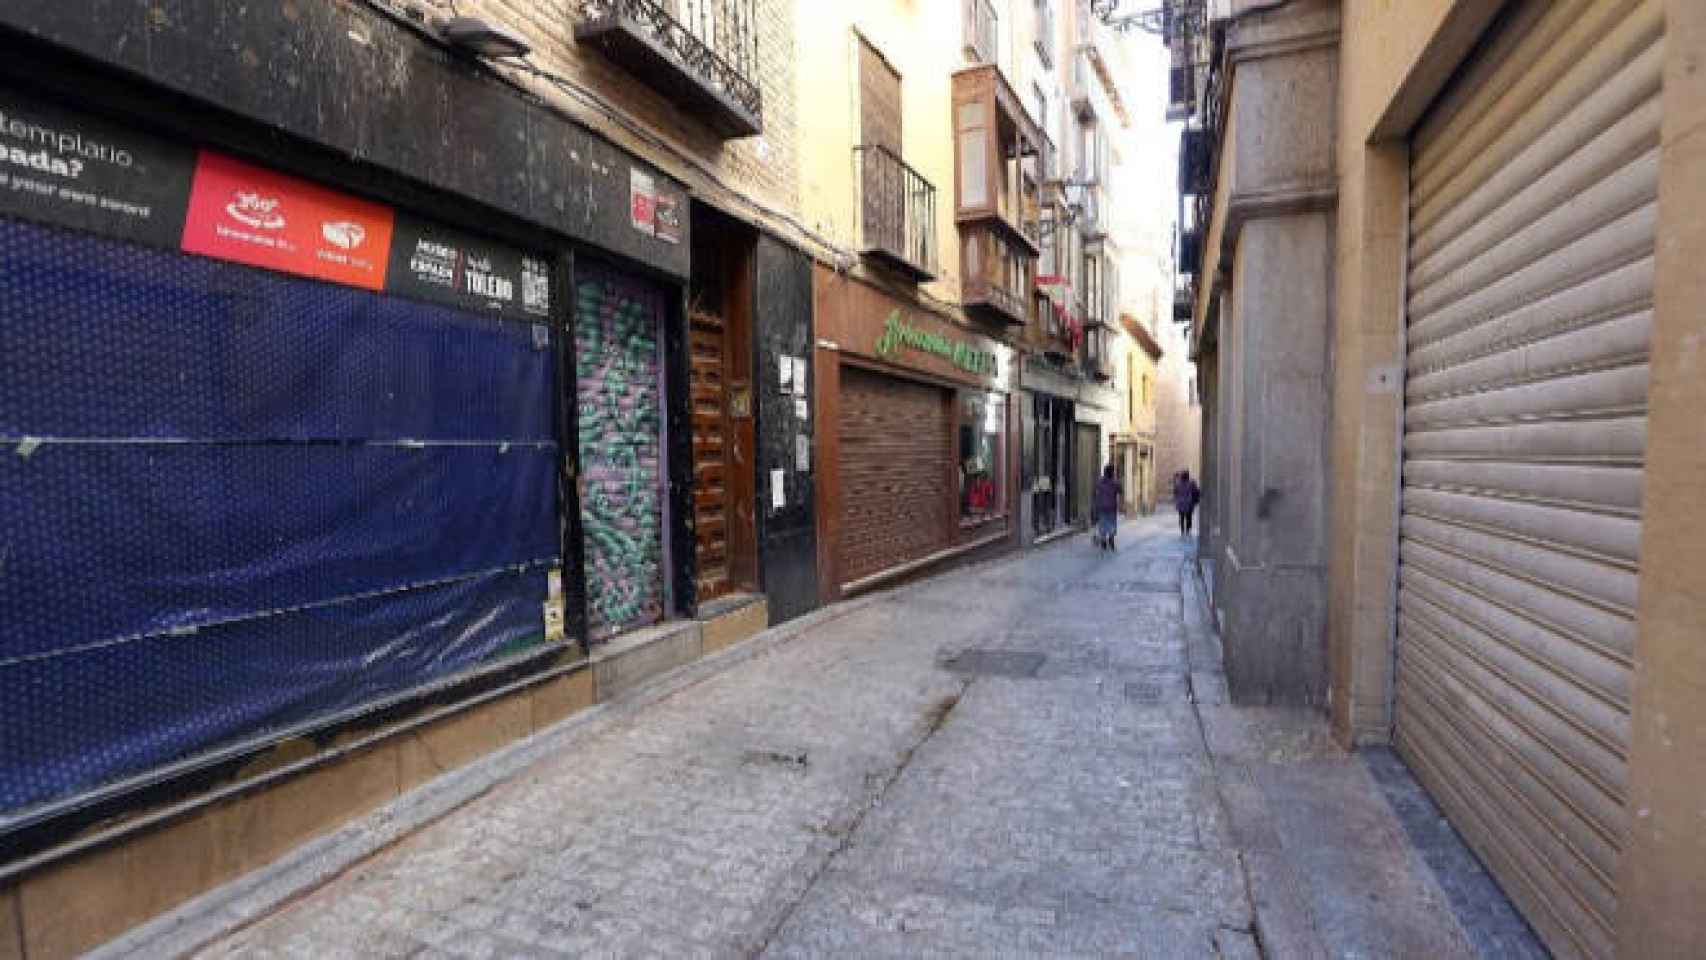 Comercios cerrados en el Casco histórico de Toledo. Foto: Óscar Huertas